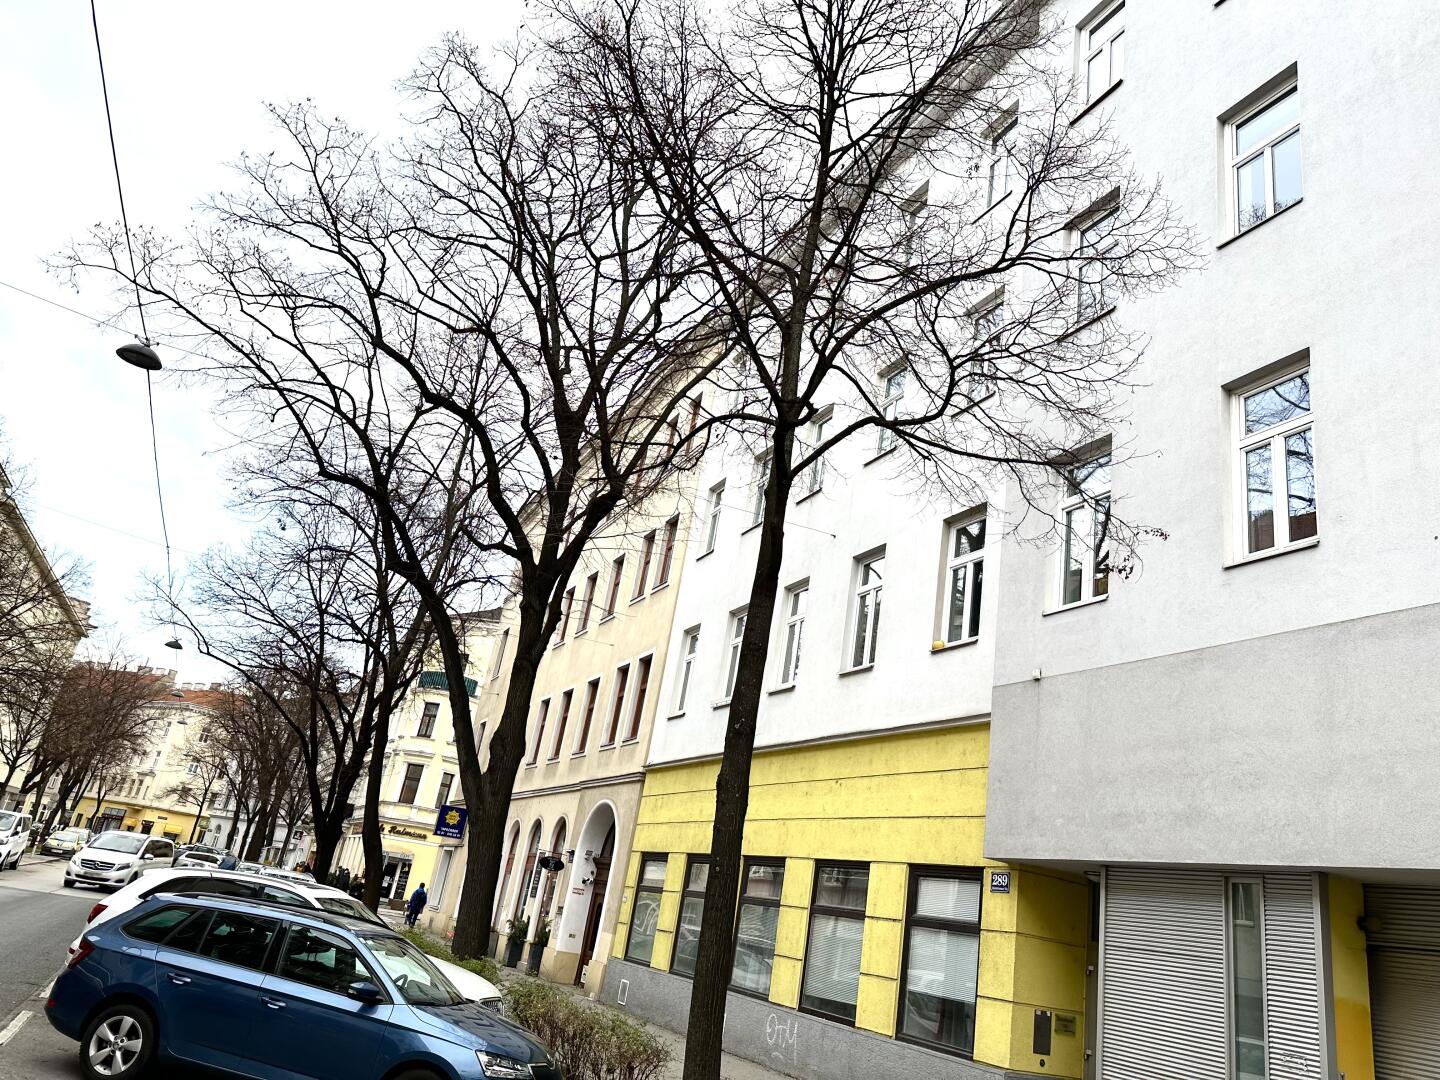 Wohnung zu kaufen: 1120 Wien,Meidling - Haus